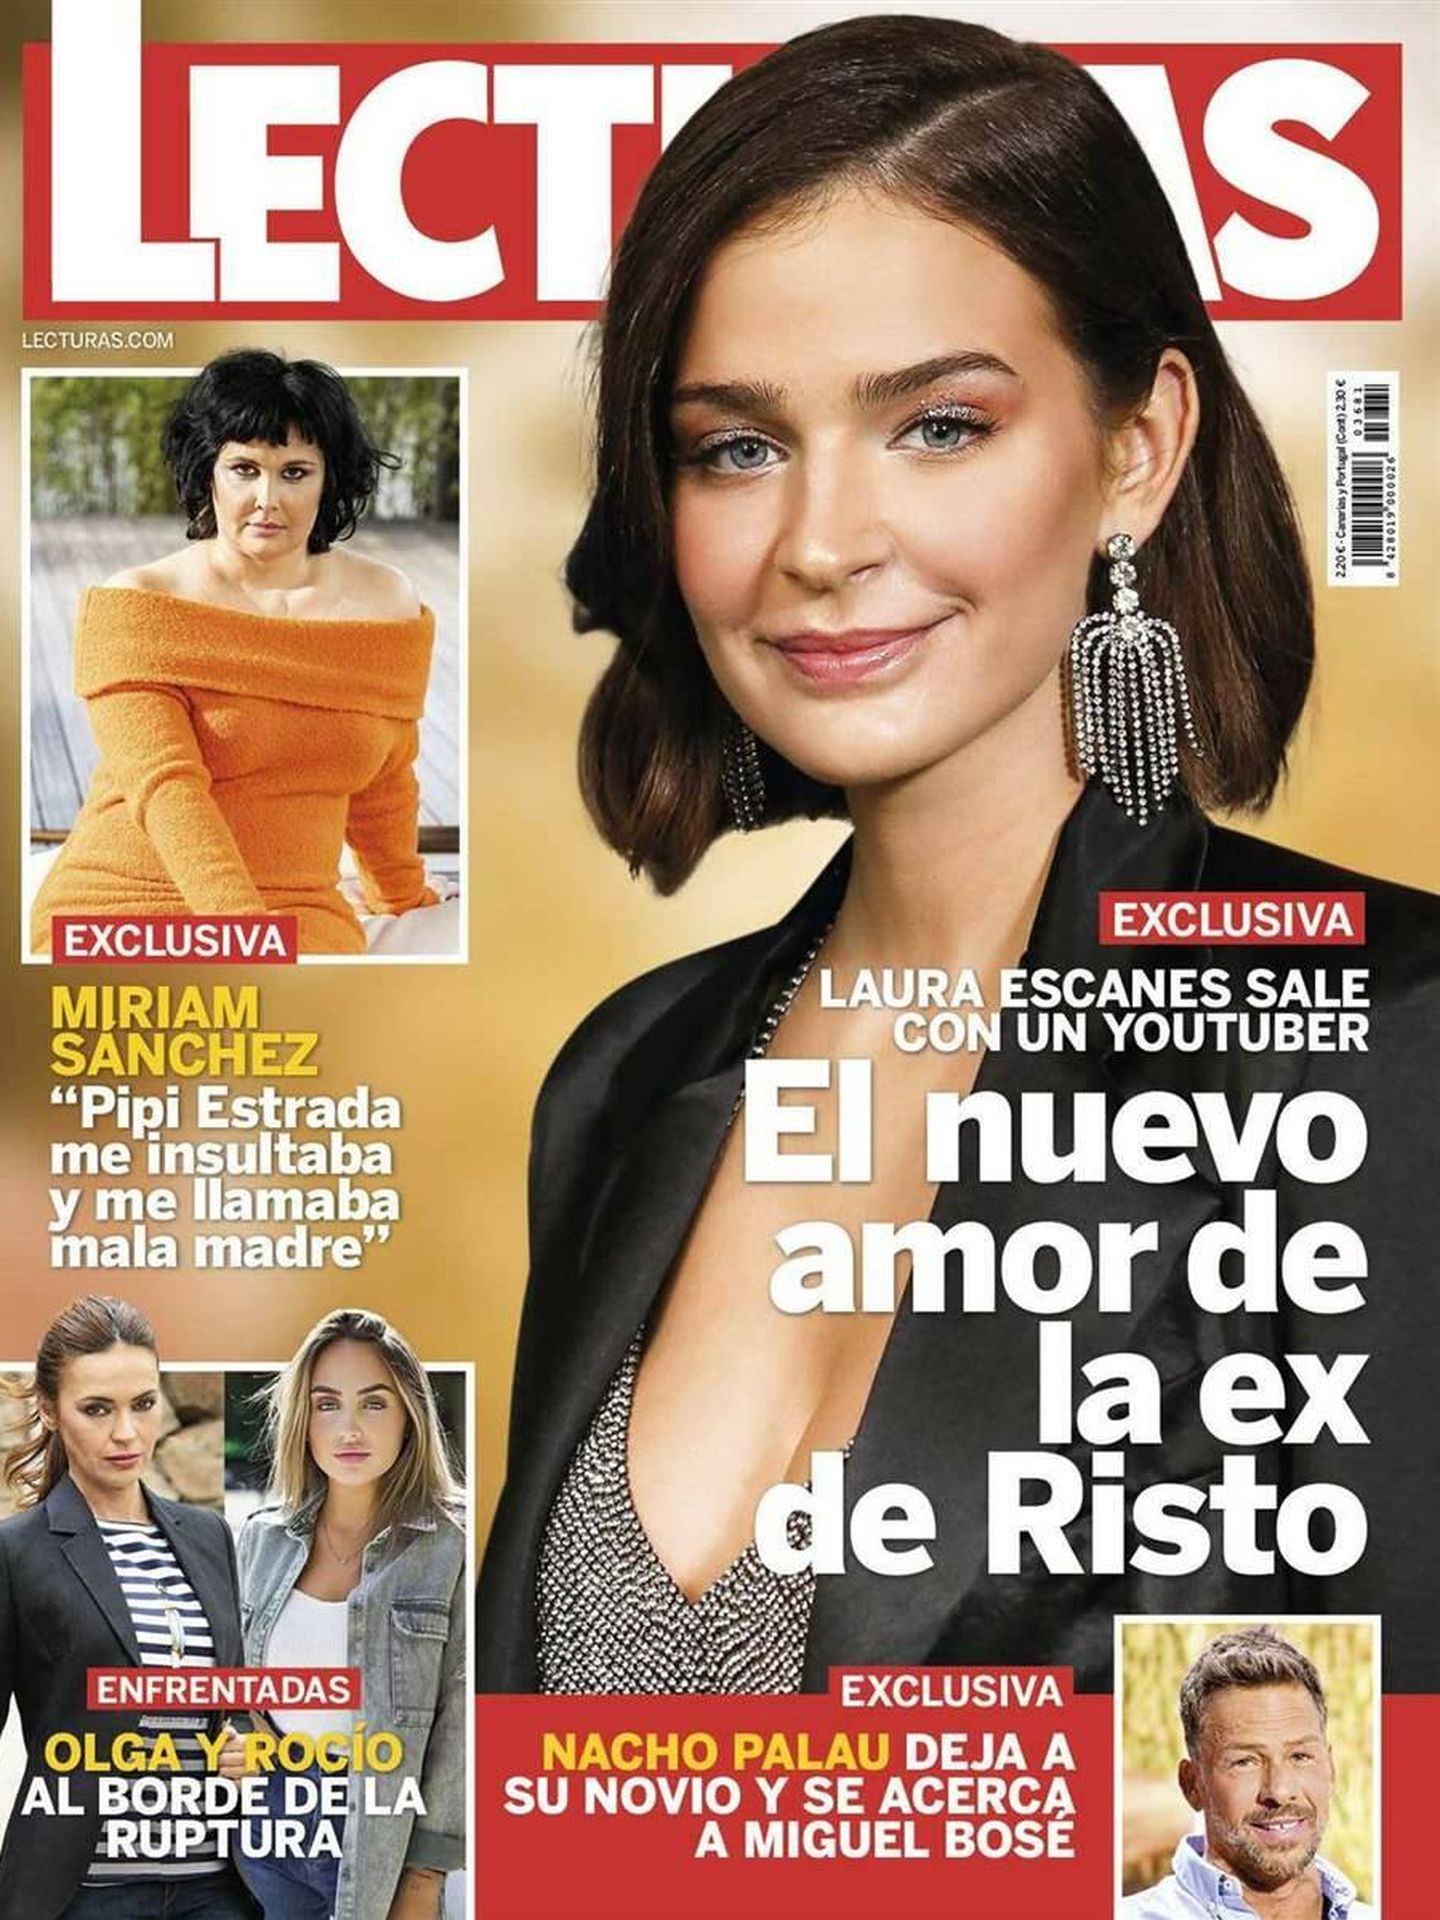 La portada de la revista 'Lecturas'.